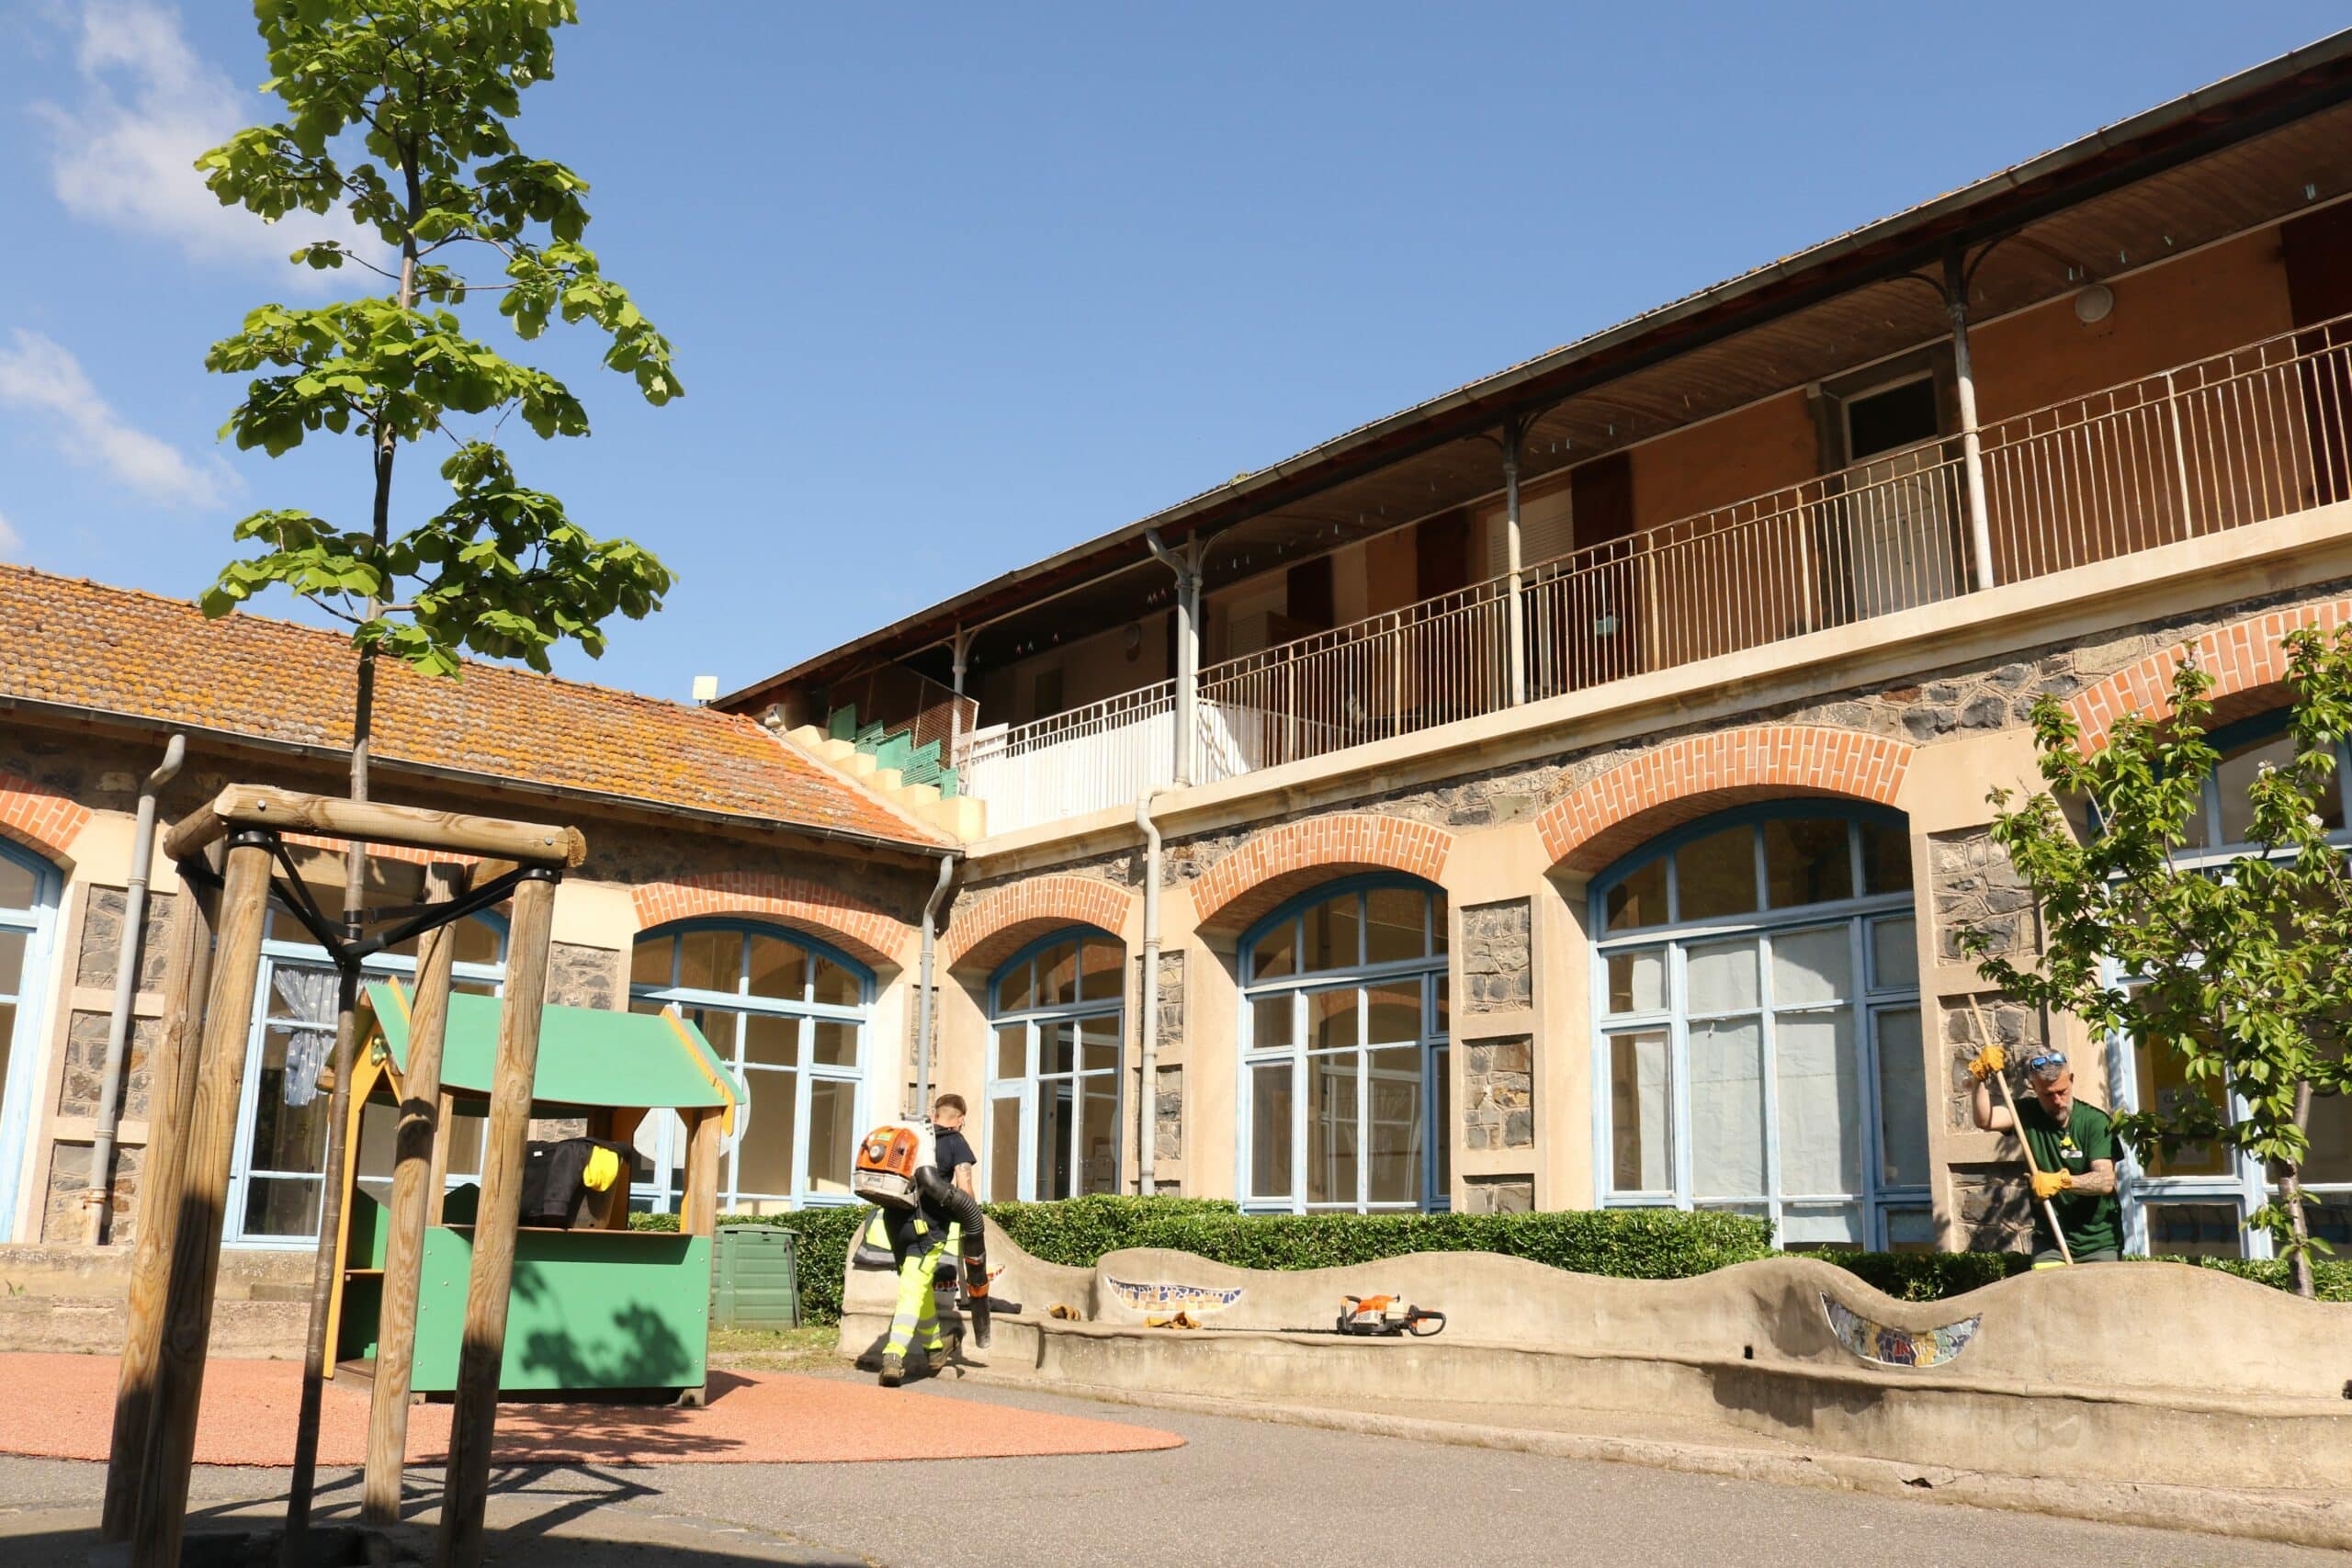 Agglo Hérault Méditerranée espaces verts taille entretien école saint thibéry